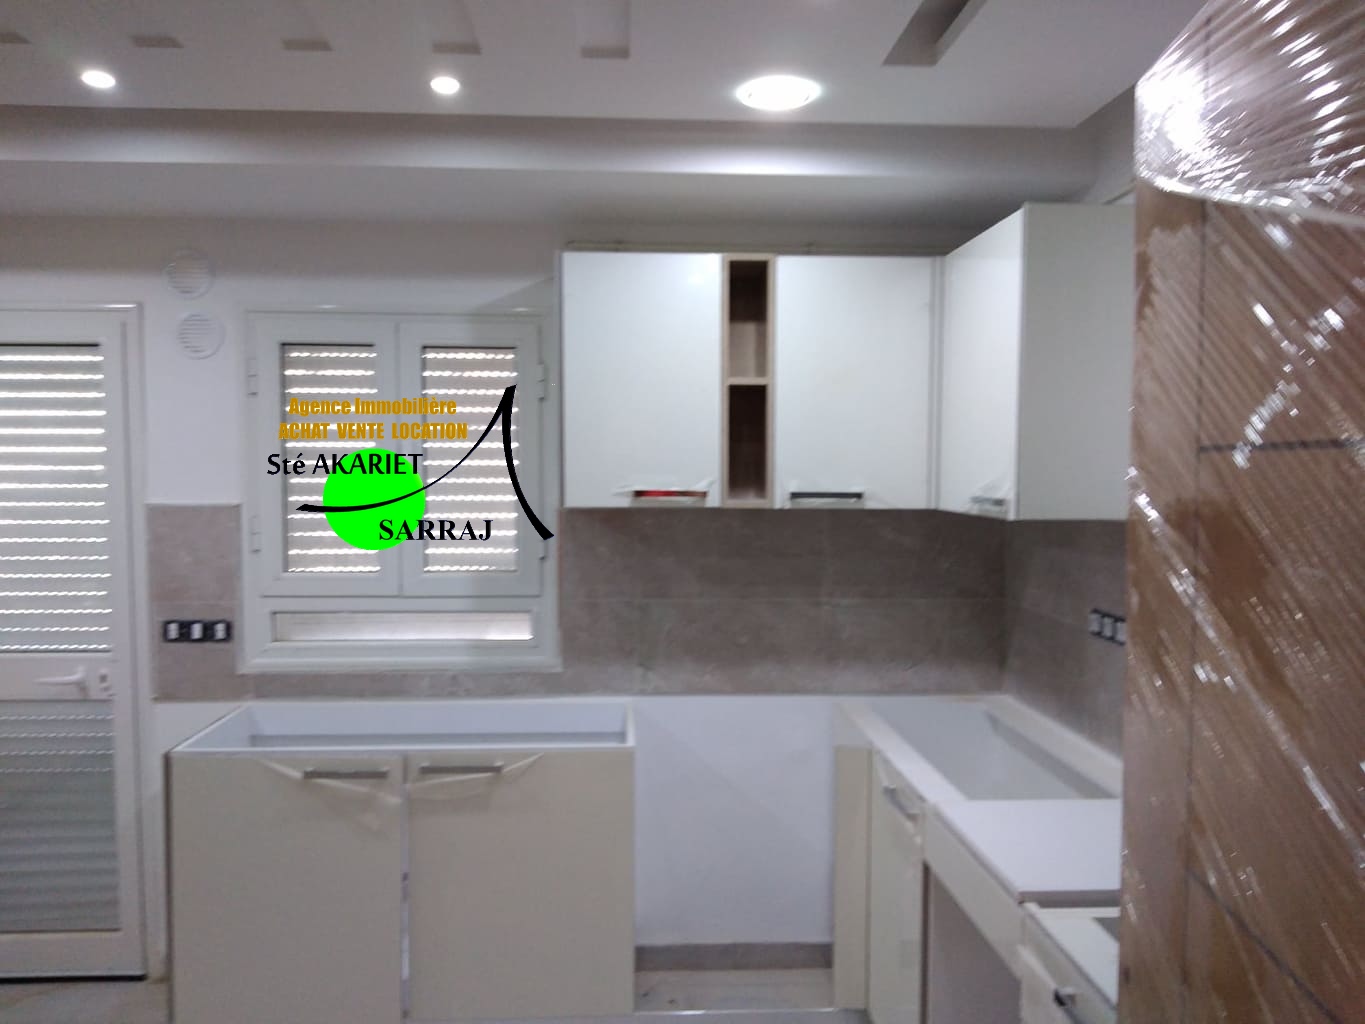 Sousse Jaouhara Sousse Khezama Vente Maisons Offre d'investissement immeuble neuf  khzema est